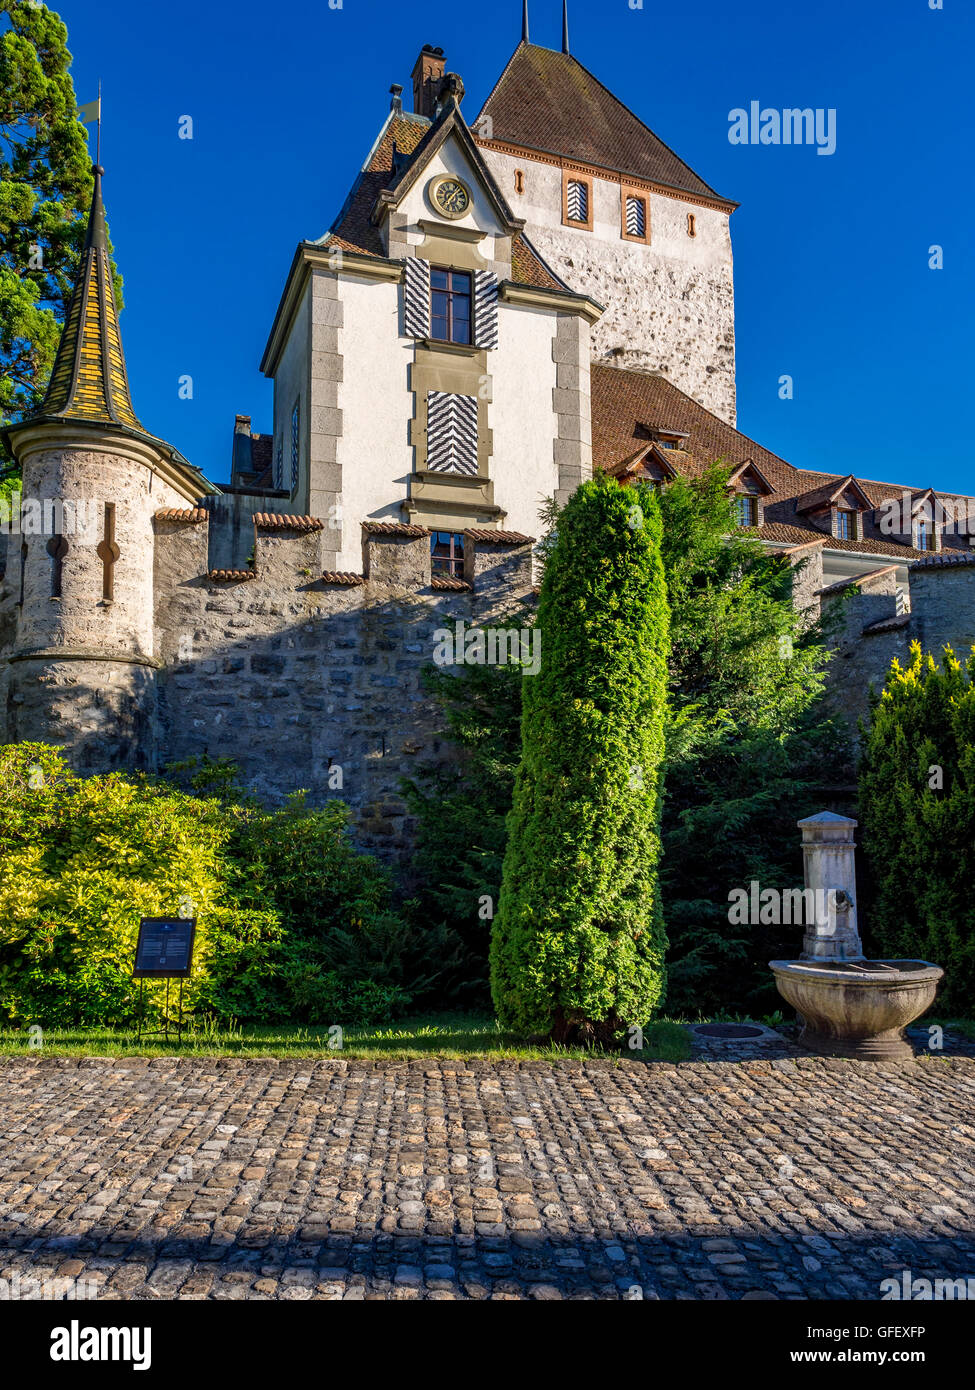 Il castello di Oberhofen sul Lago di Thun, Oberland bernese, il Cantone di Berna, Svizzera, Europa Foto Stock